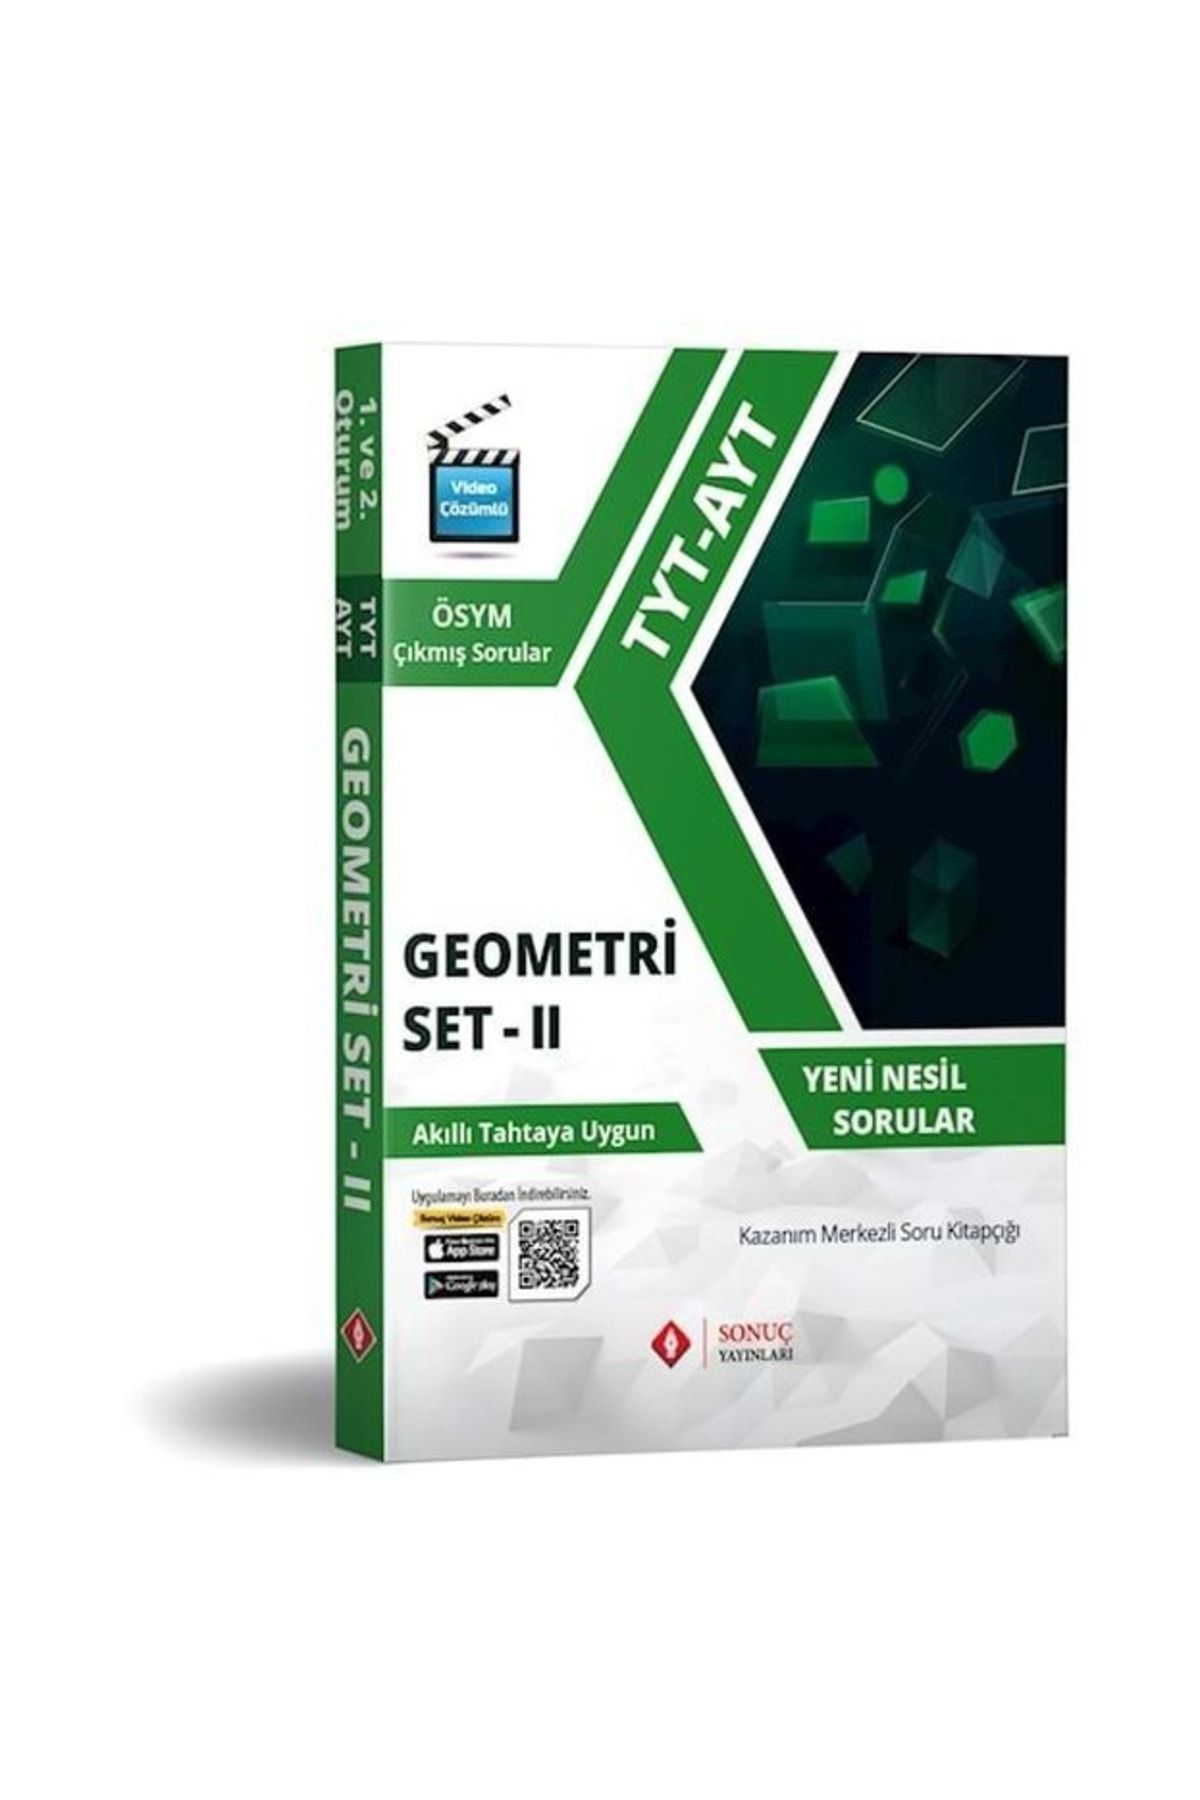 Sonuç Yayınları Sonuç Tyt-ayt Geometri Set Iı Kazanım Merkezli Soru Kitapçığı (yeni)